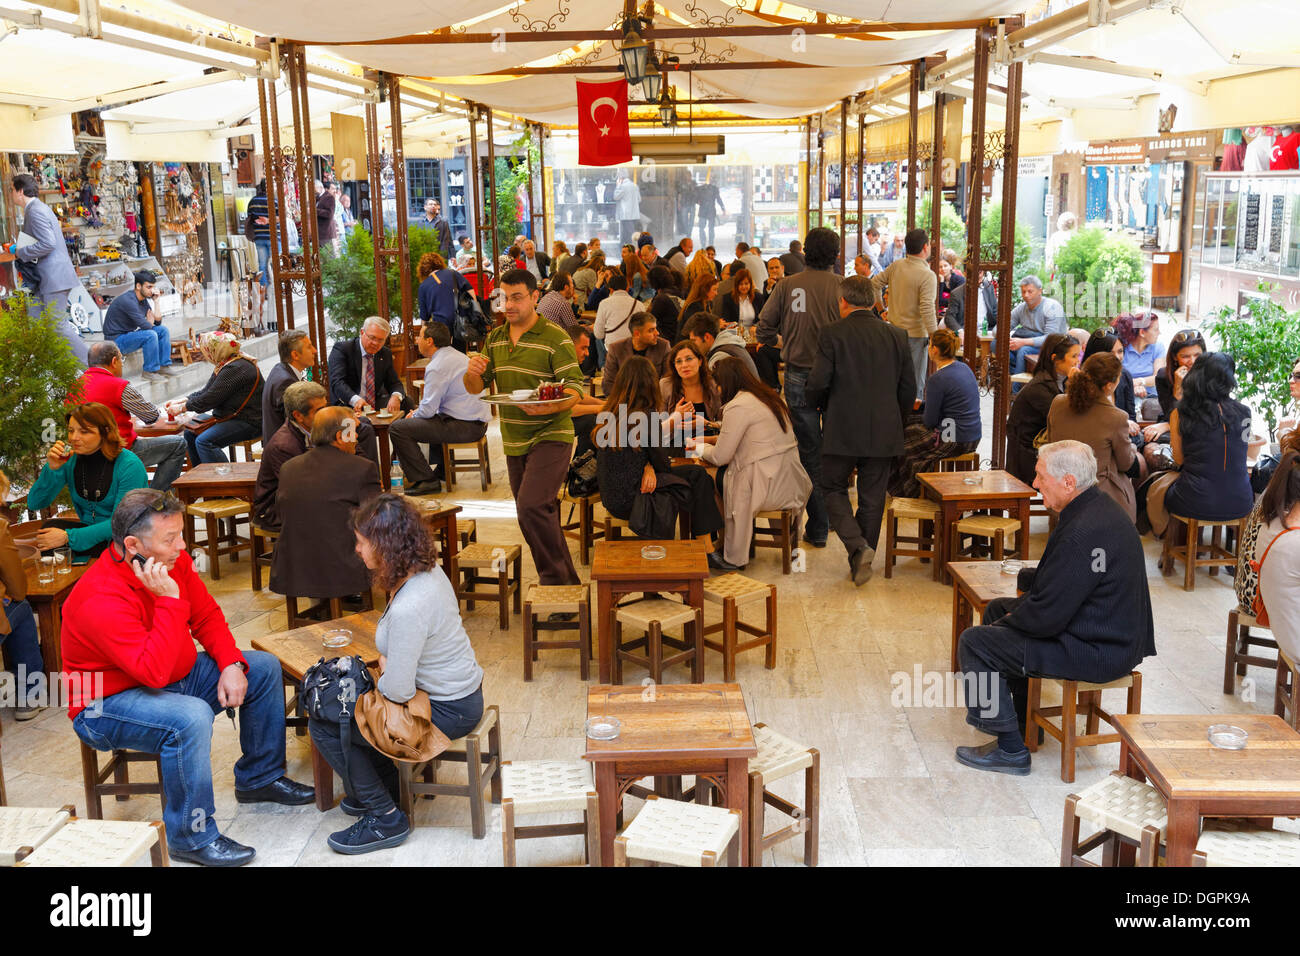 Café in Kizlaragasi Hani Bazar Kemeralti, Izmir, İzmir Provinz, ägäische Region, Türkei Stockfoto